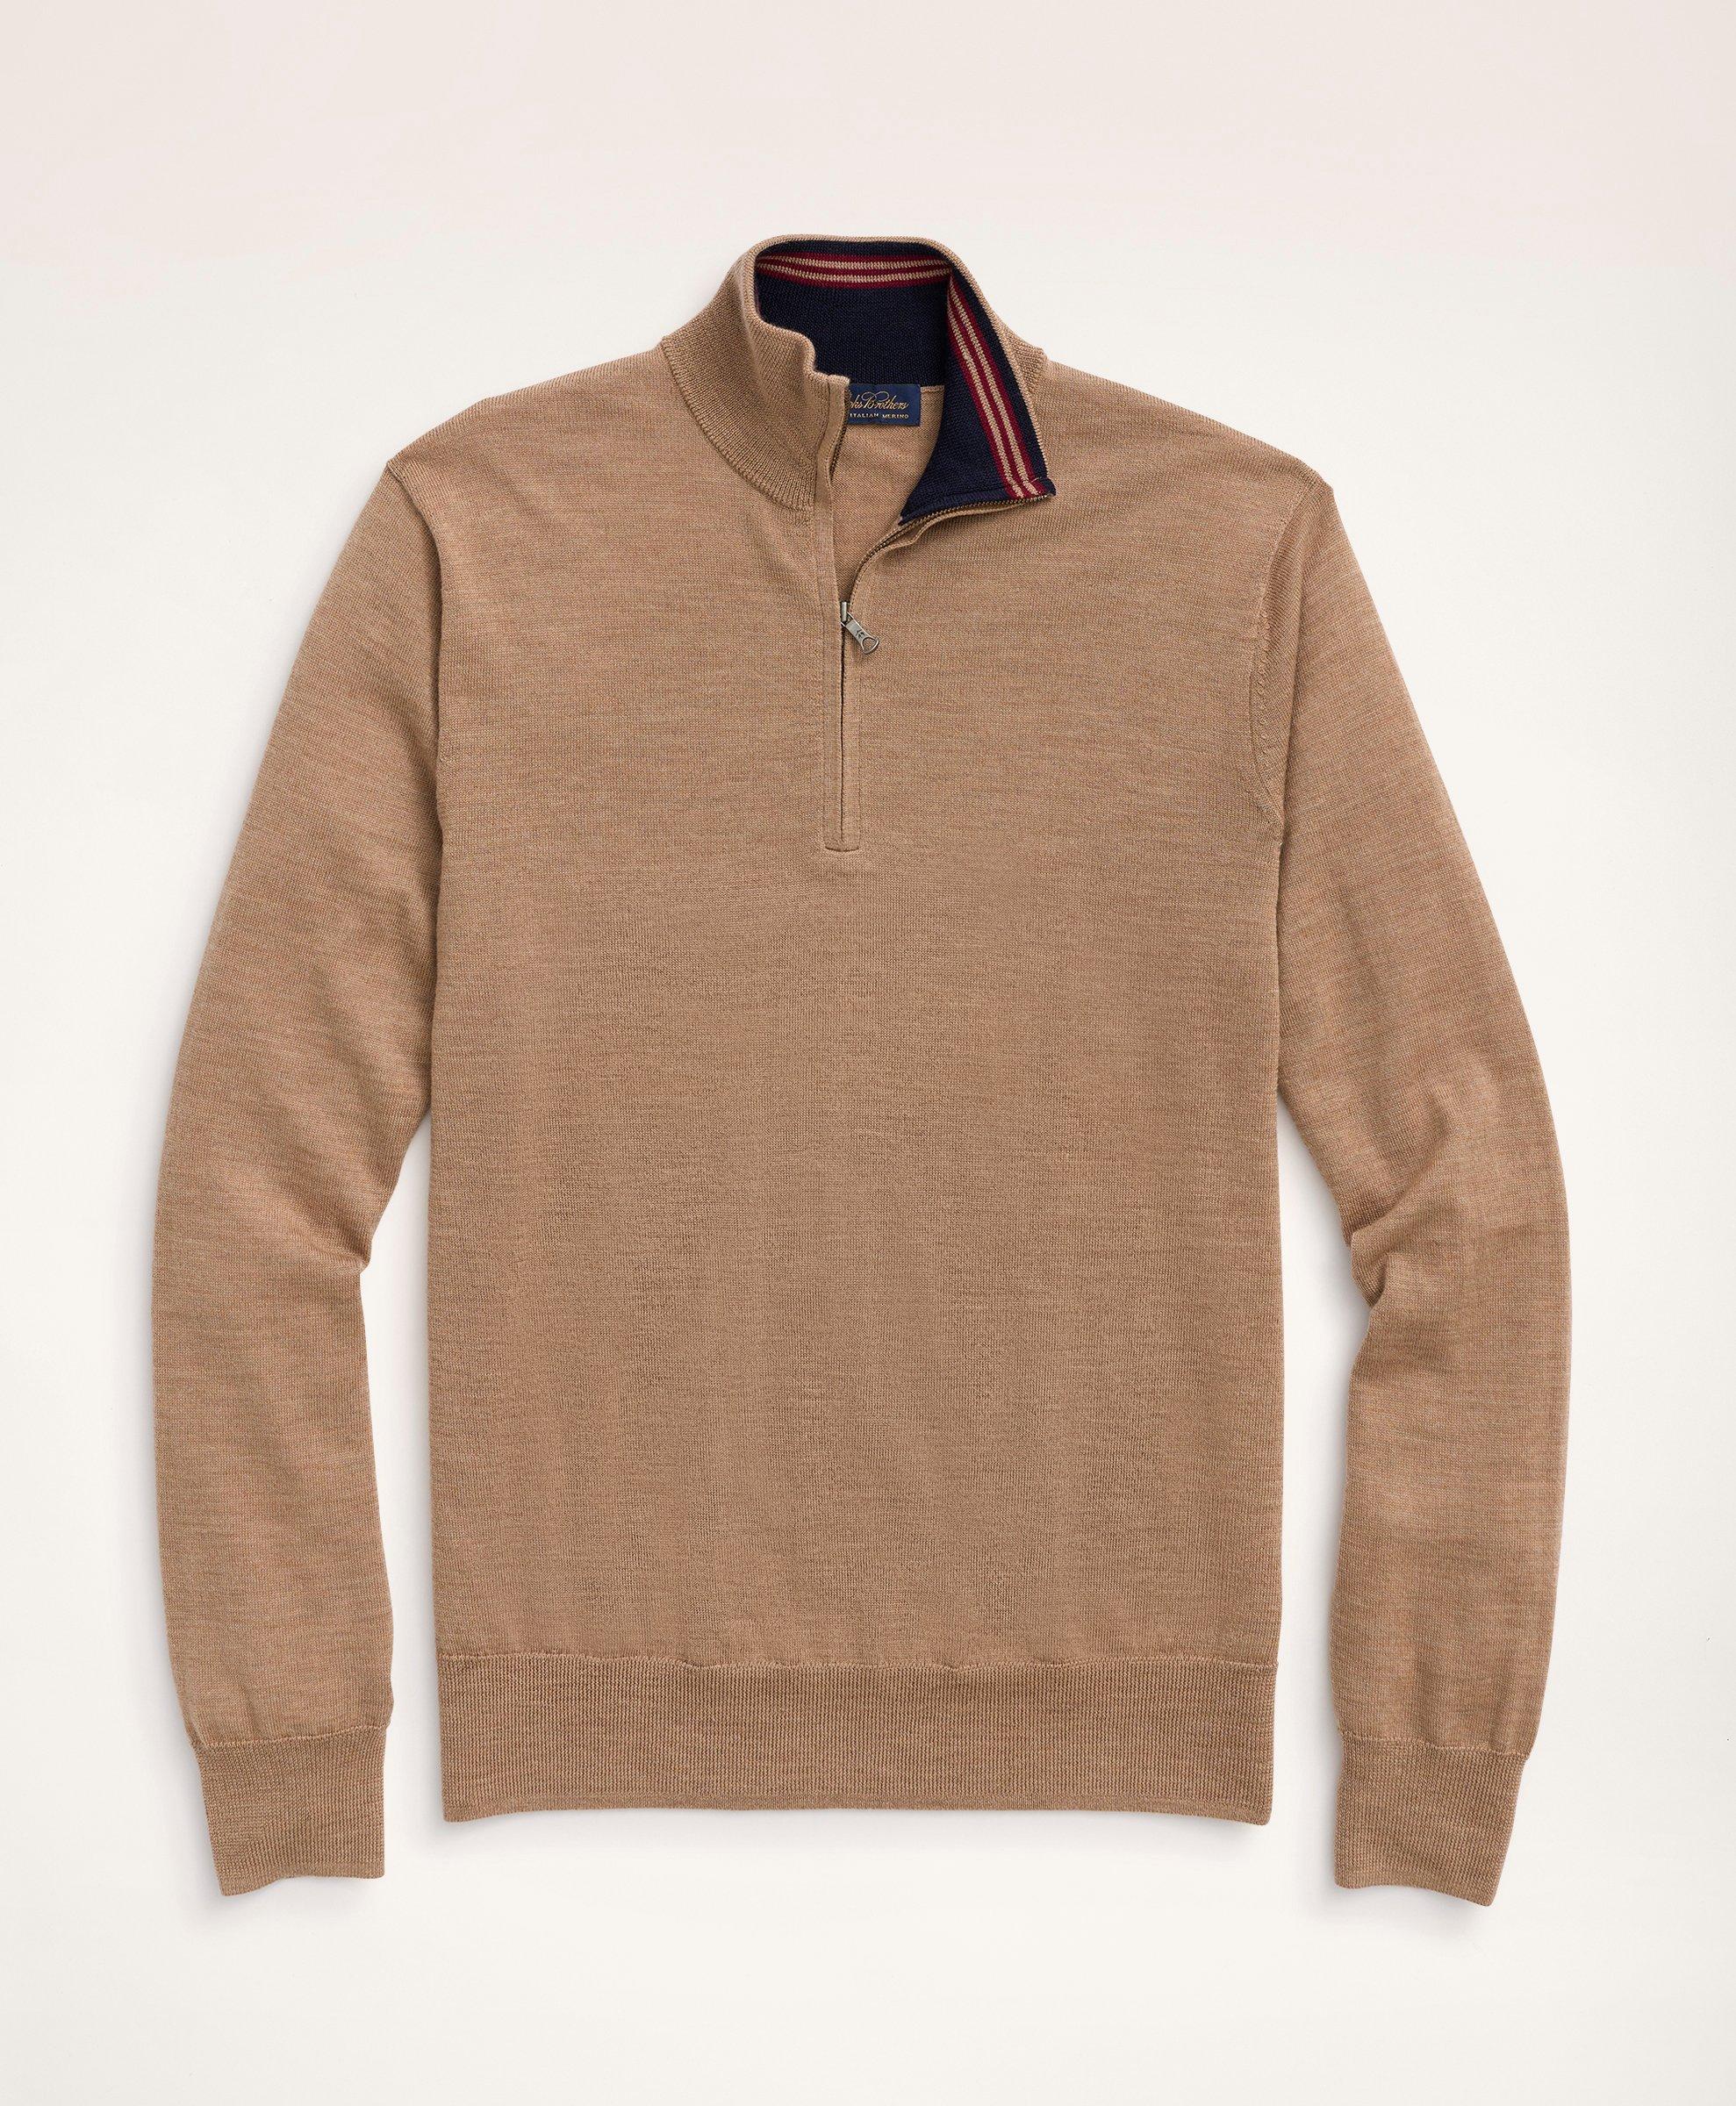 Brooks Brothers Big & Tall Merino Half-zip Sweater | Camel | Size 4x Tall